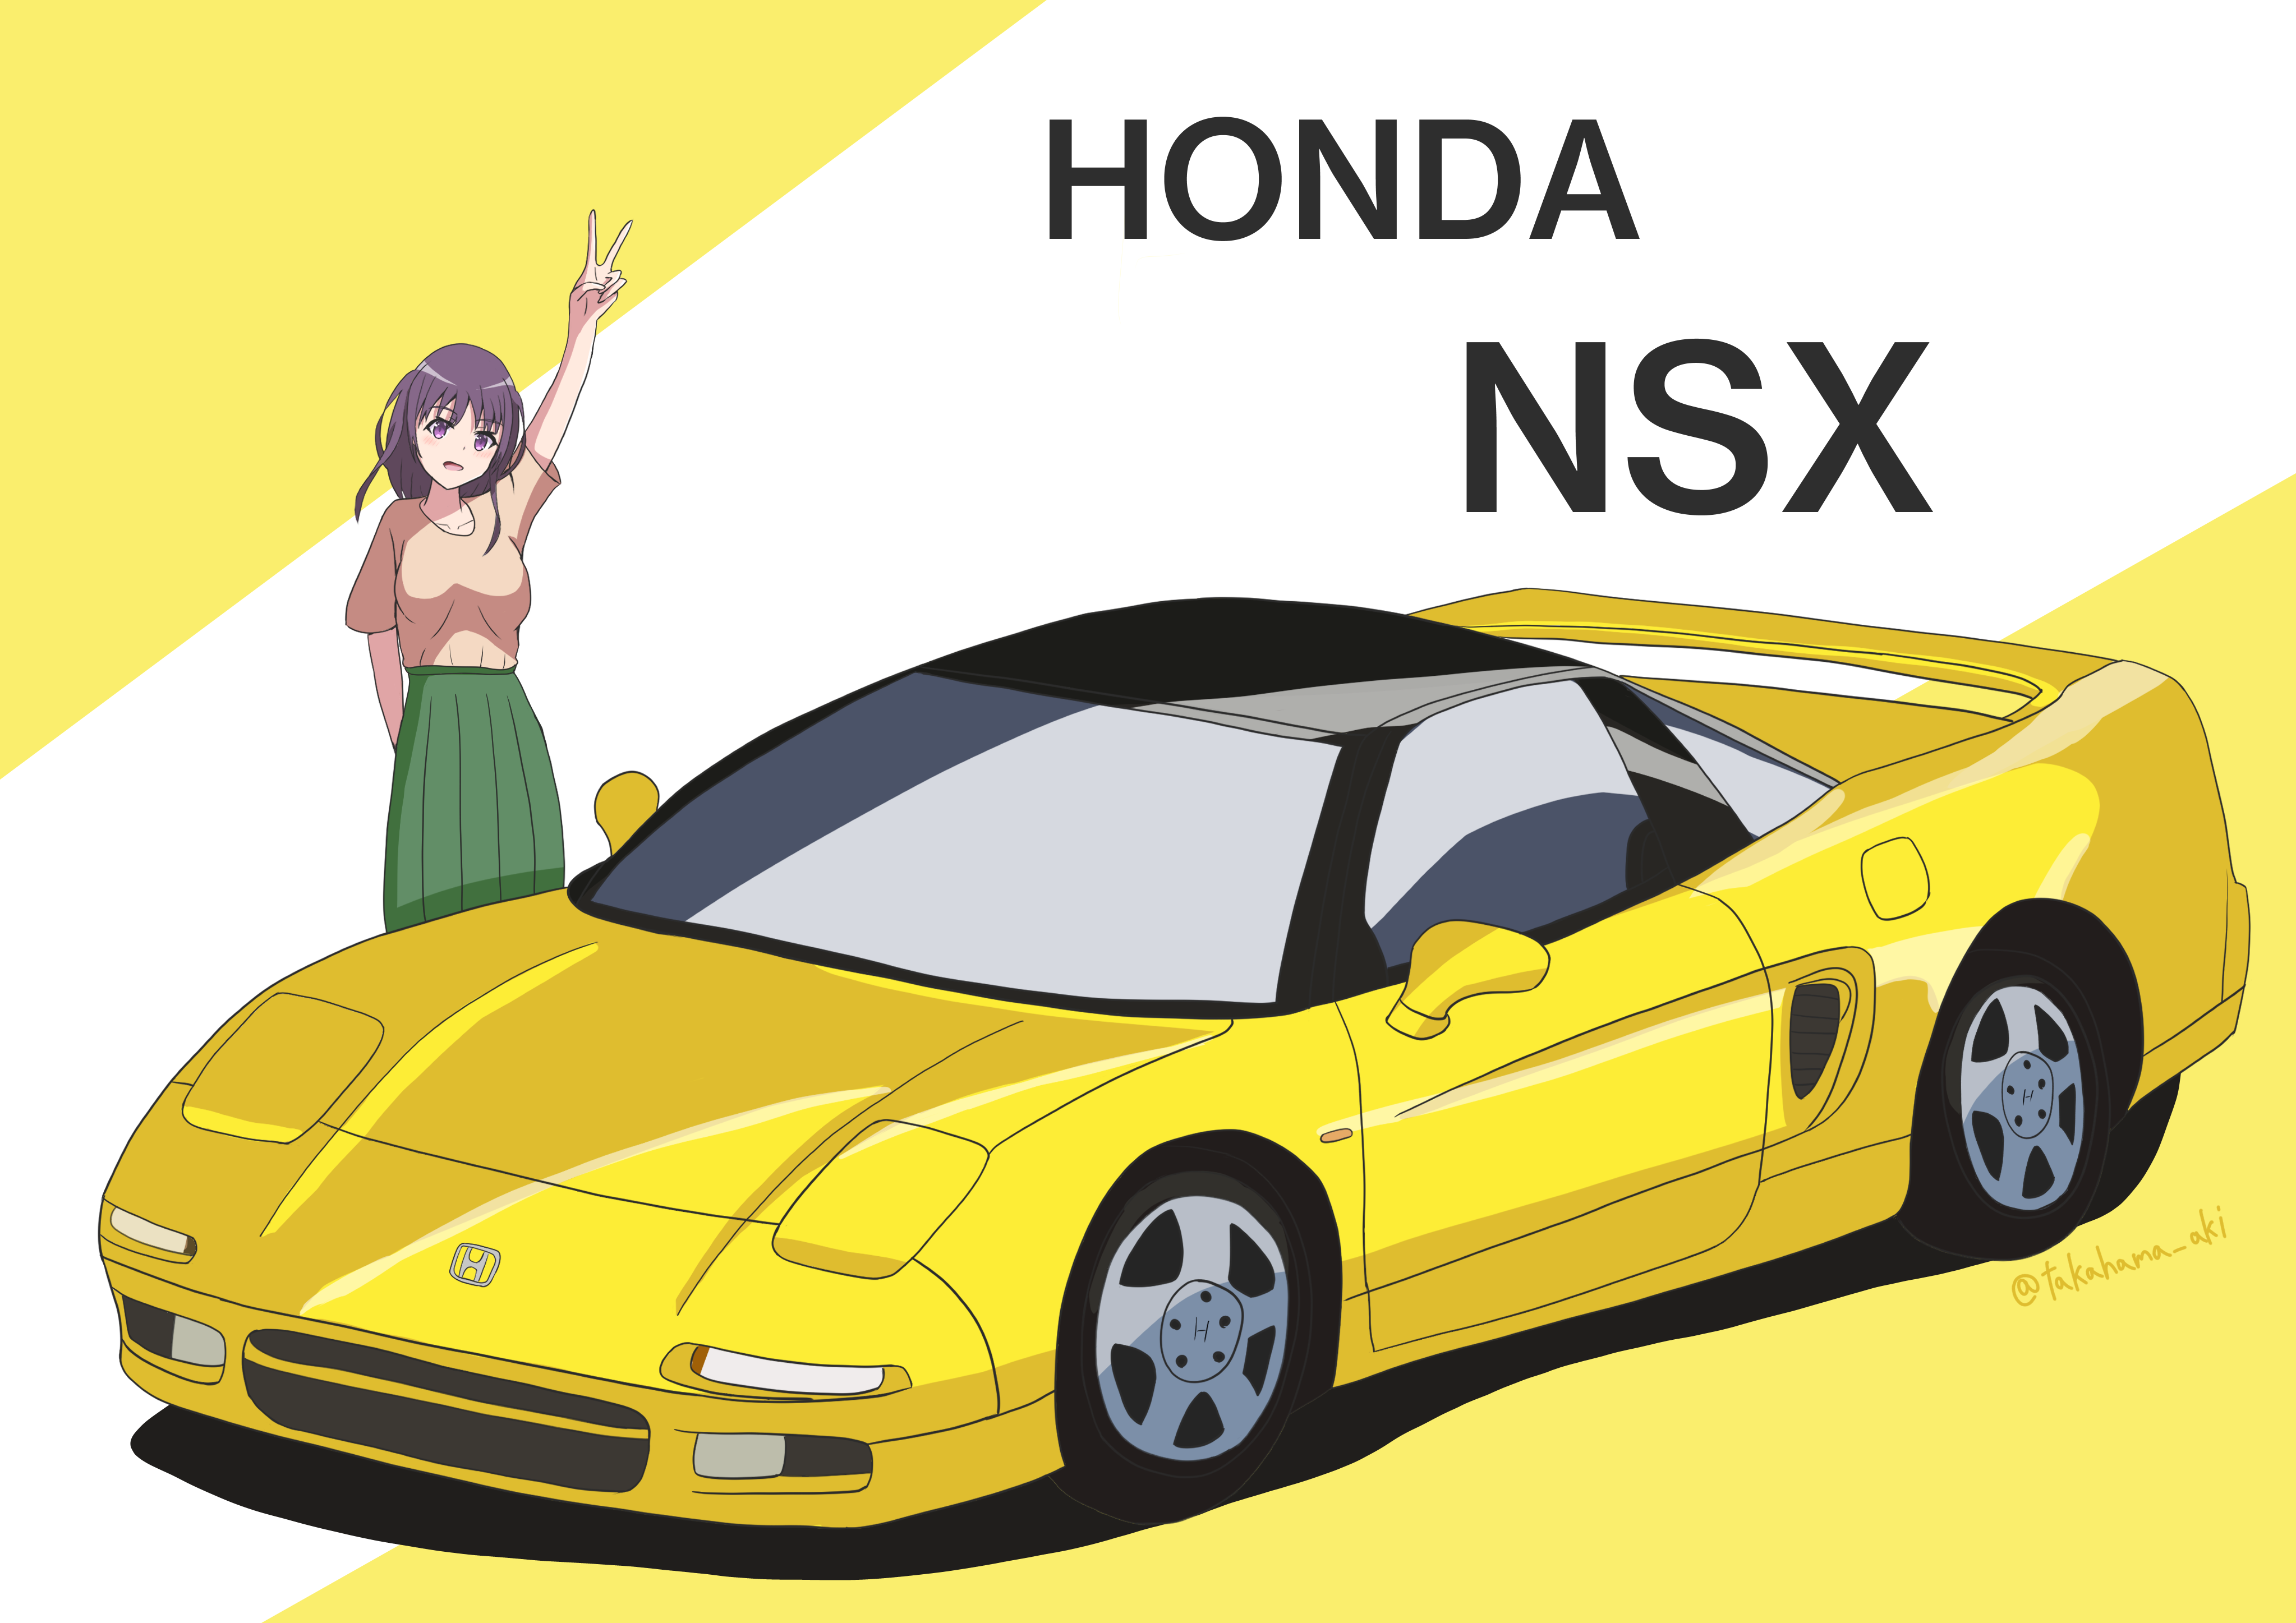 Twitter 上的 高浜あき 90年代スポーツカー第一弾 ホンダ Nsx描きました Nsxはスポーツカーよりスーパーカーと言うほうがふさわしいですね ホンダ Nsx イラスト イラスト初心者 T Co Sxrbqupu45 Twitter